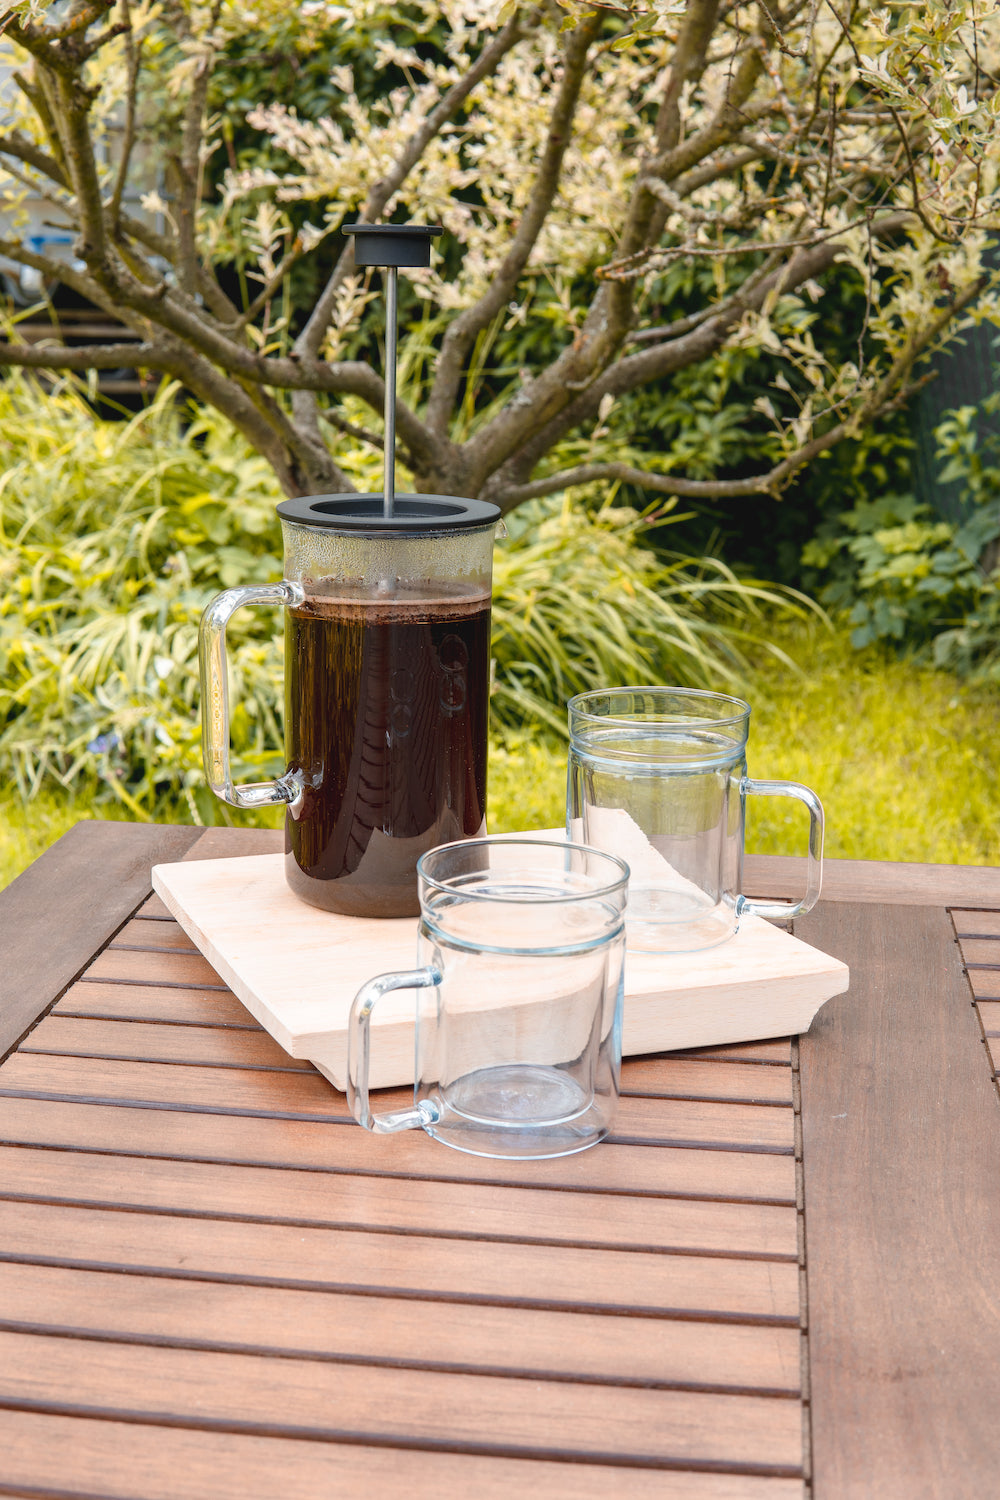 Skleněný french press Simax s kávou na zahradním stole a dvě dvoustěnné sklenice Simax Twin